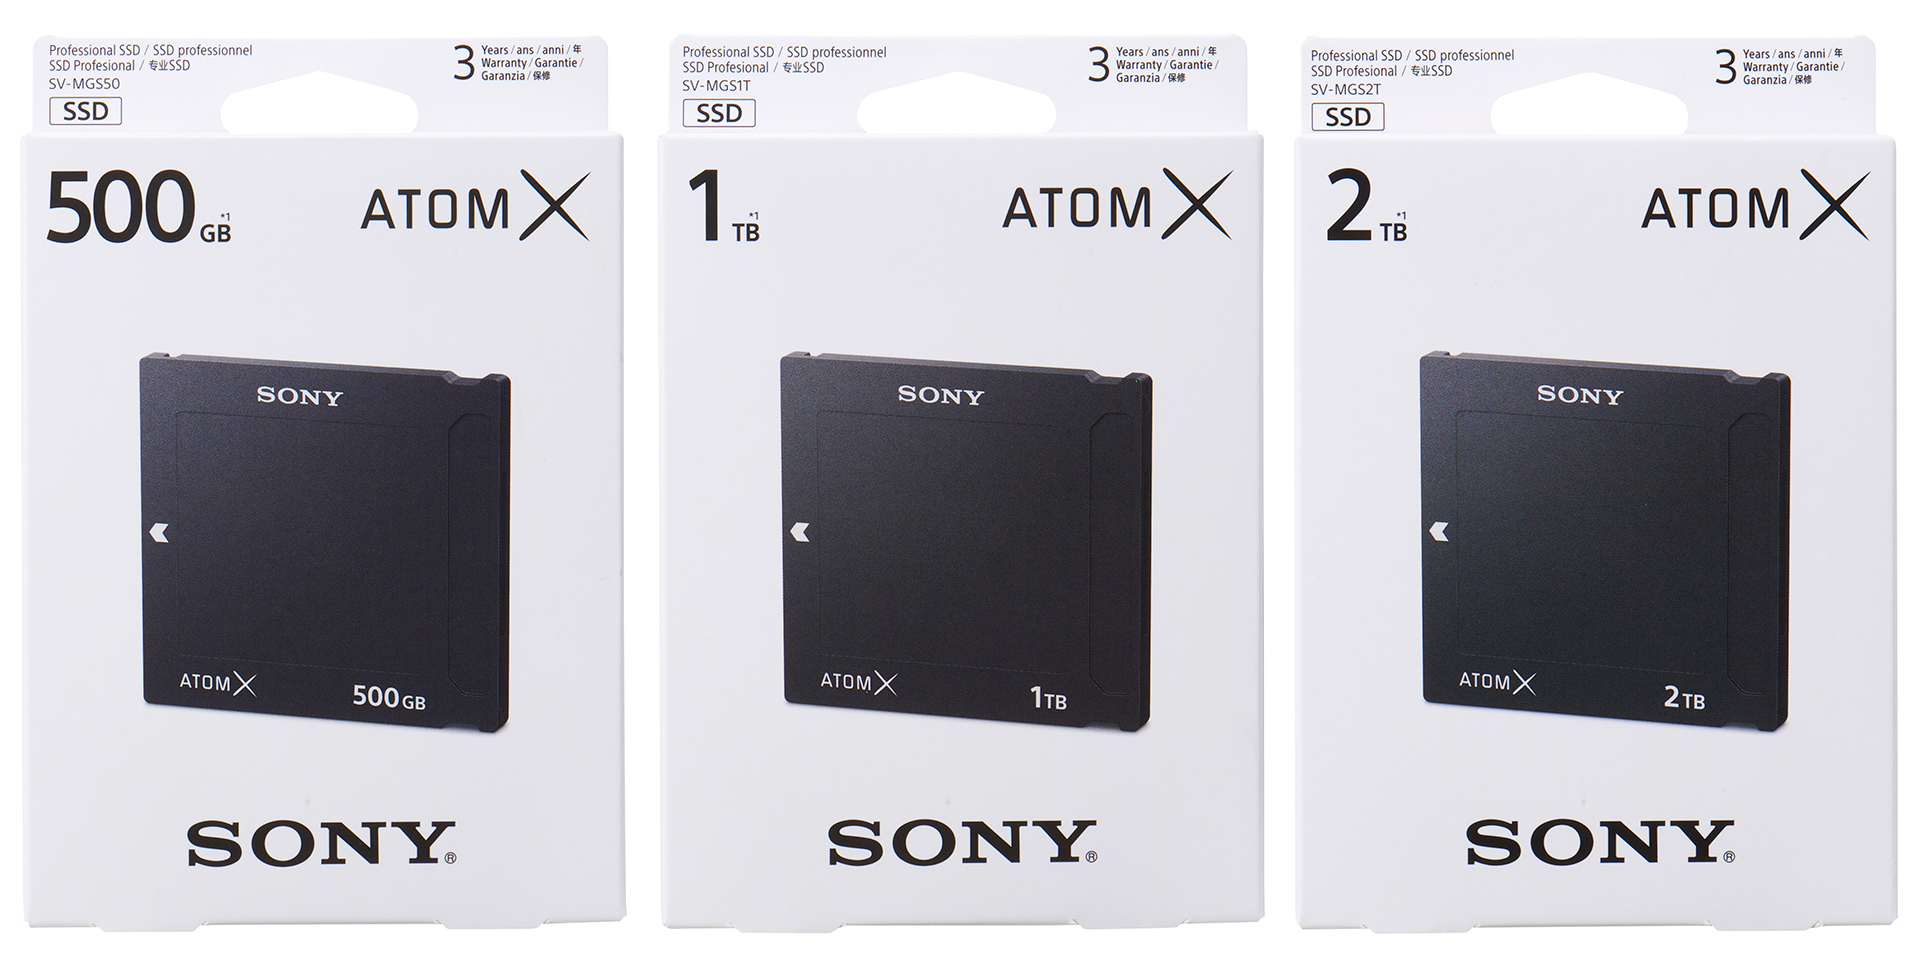 ソニーがAtomX対応のSSDminiドライブを発表 | CineD